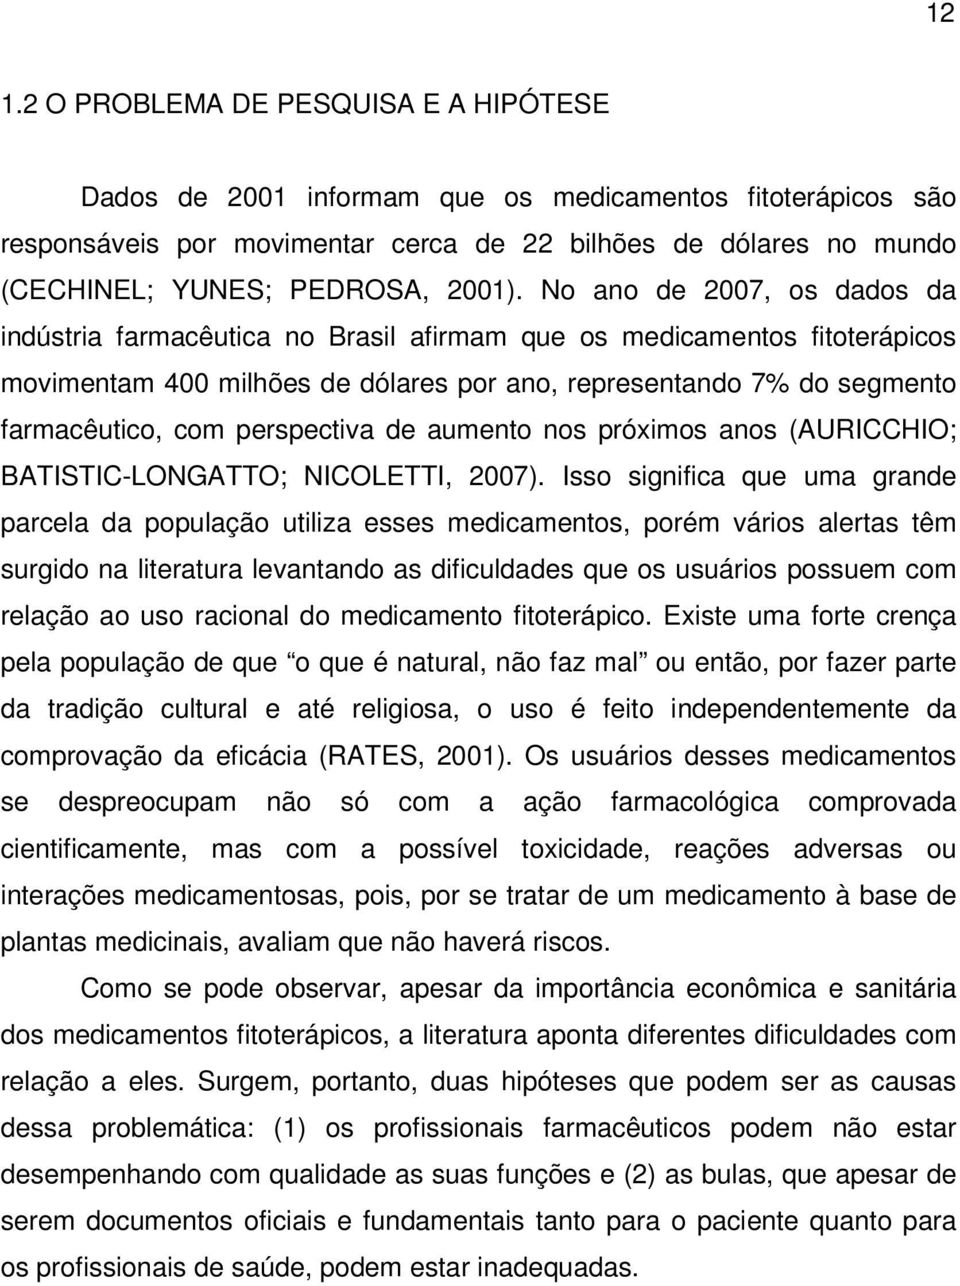 No ano de 2007, os dados da indústria farmacêutica no Brasil afirmam que os medicamentos fitoterápicos movimentam 400 milhões de dólares por ano, representando 7% do segmento farmacêutico, com